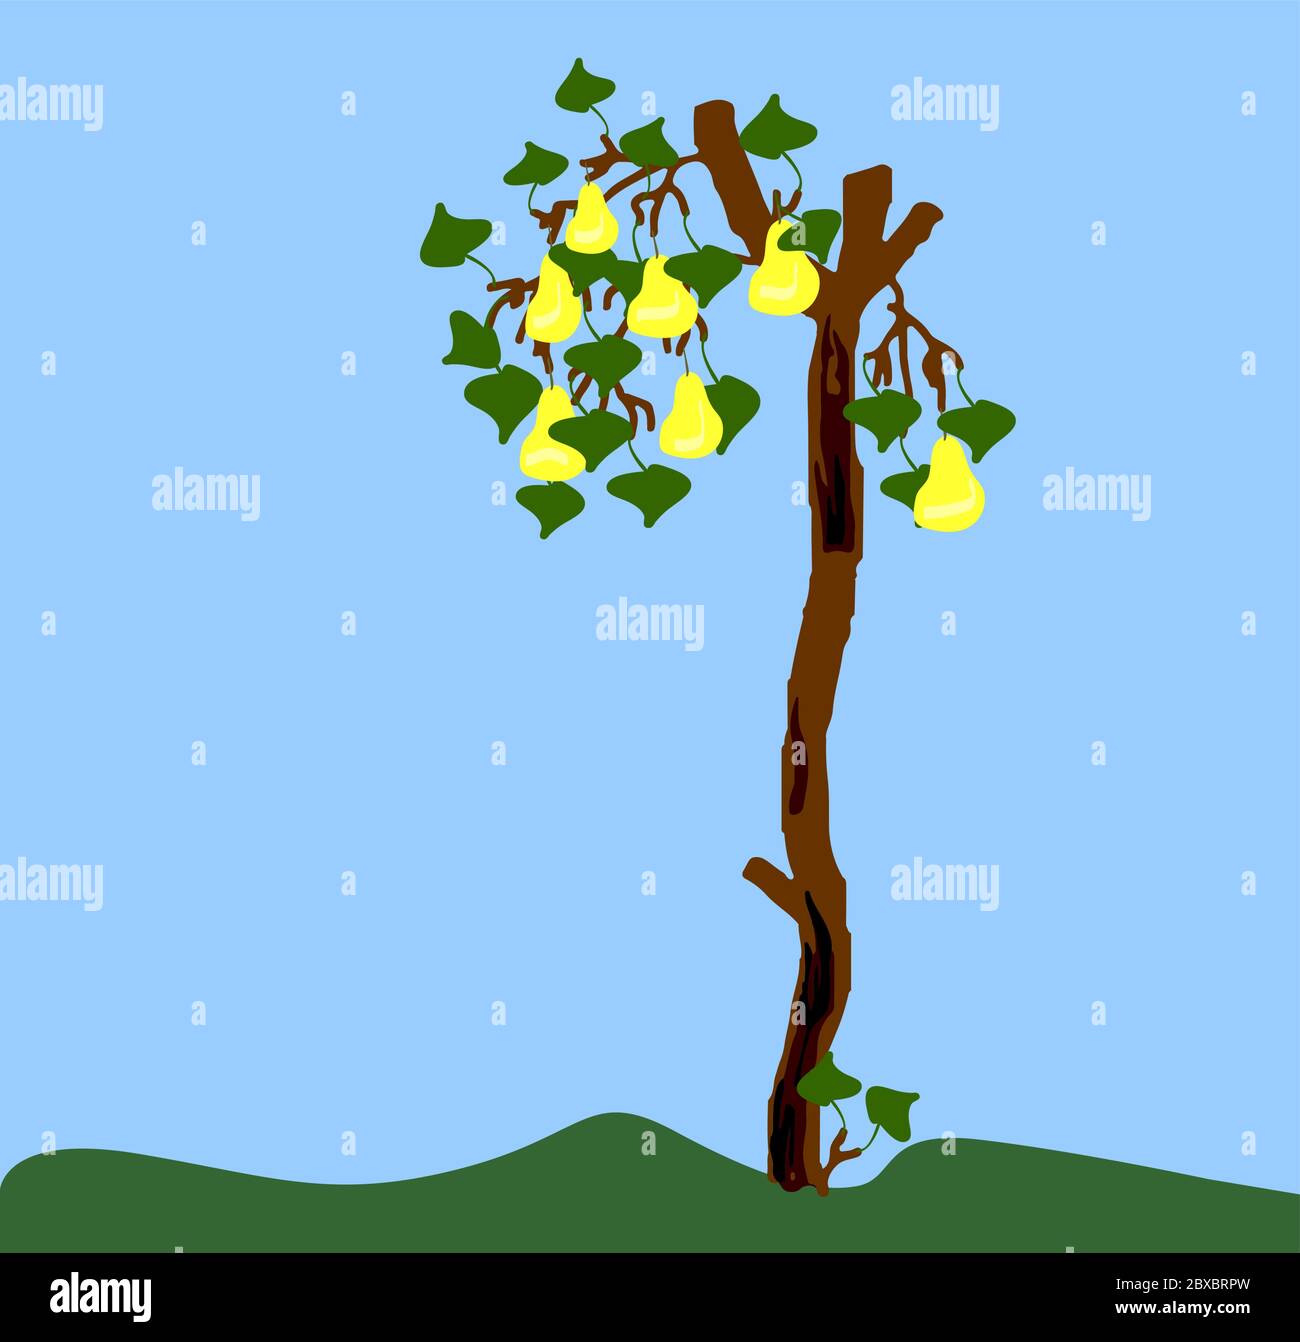 pera vecchia con rami segati e corteccia di carrata e su rami piccoli foglie verdi e pere gialle. imitazione del disegno dei bambini Illustrazione Vettoriale